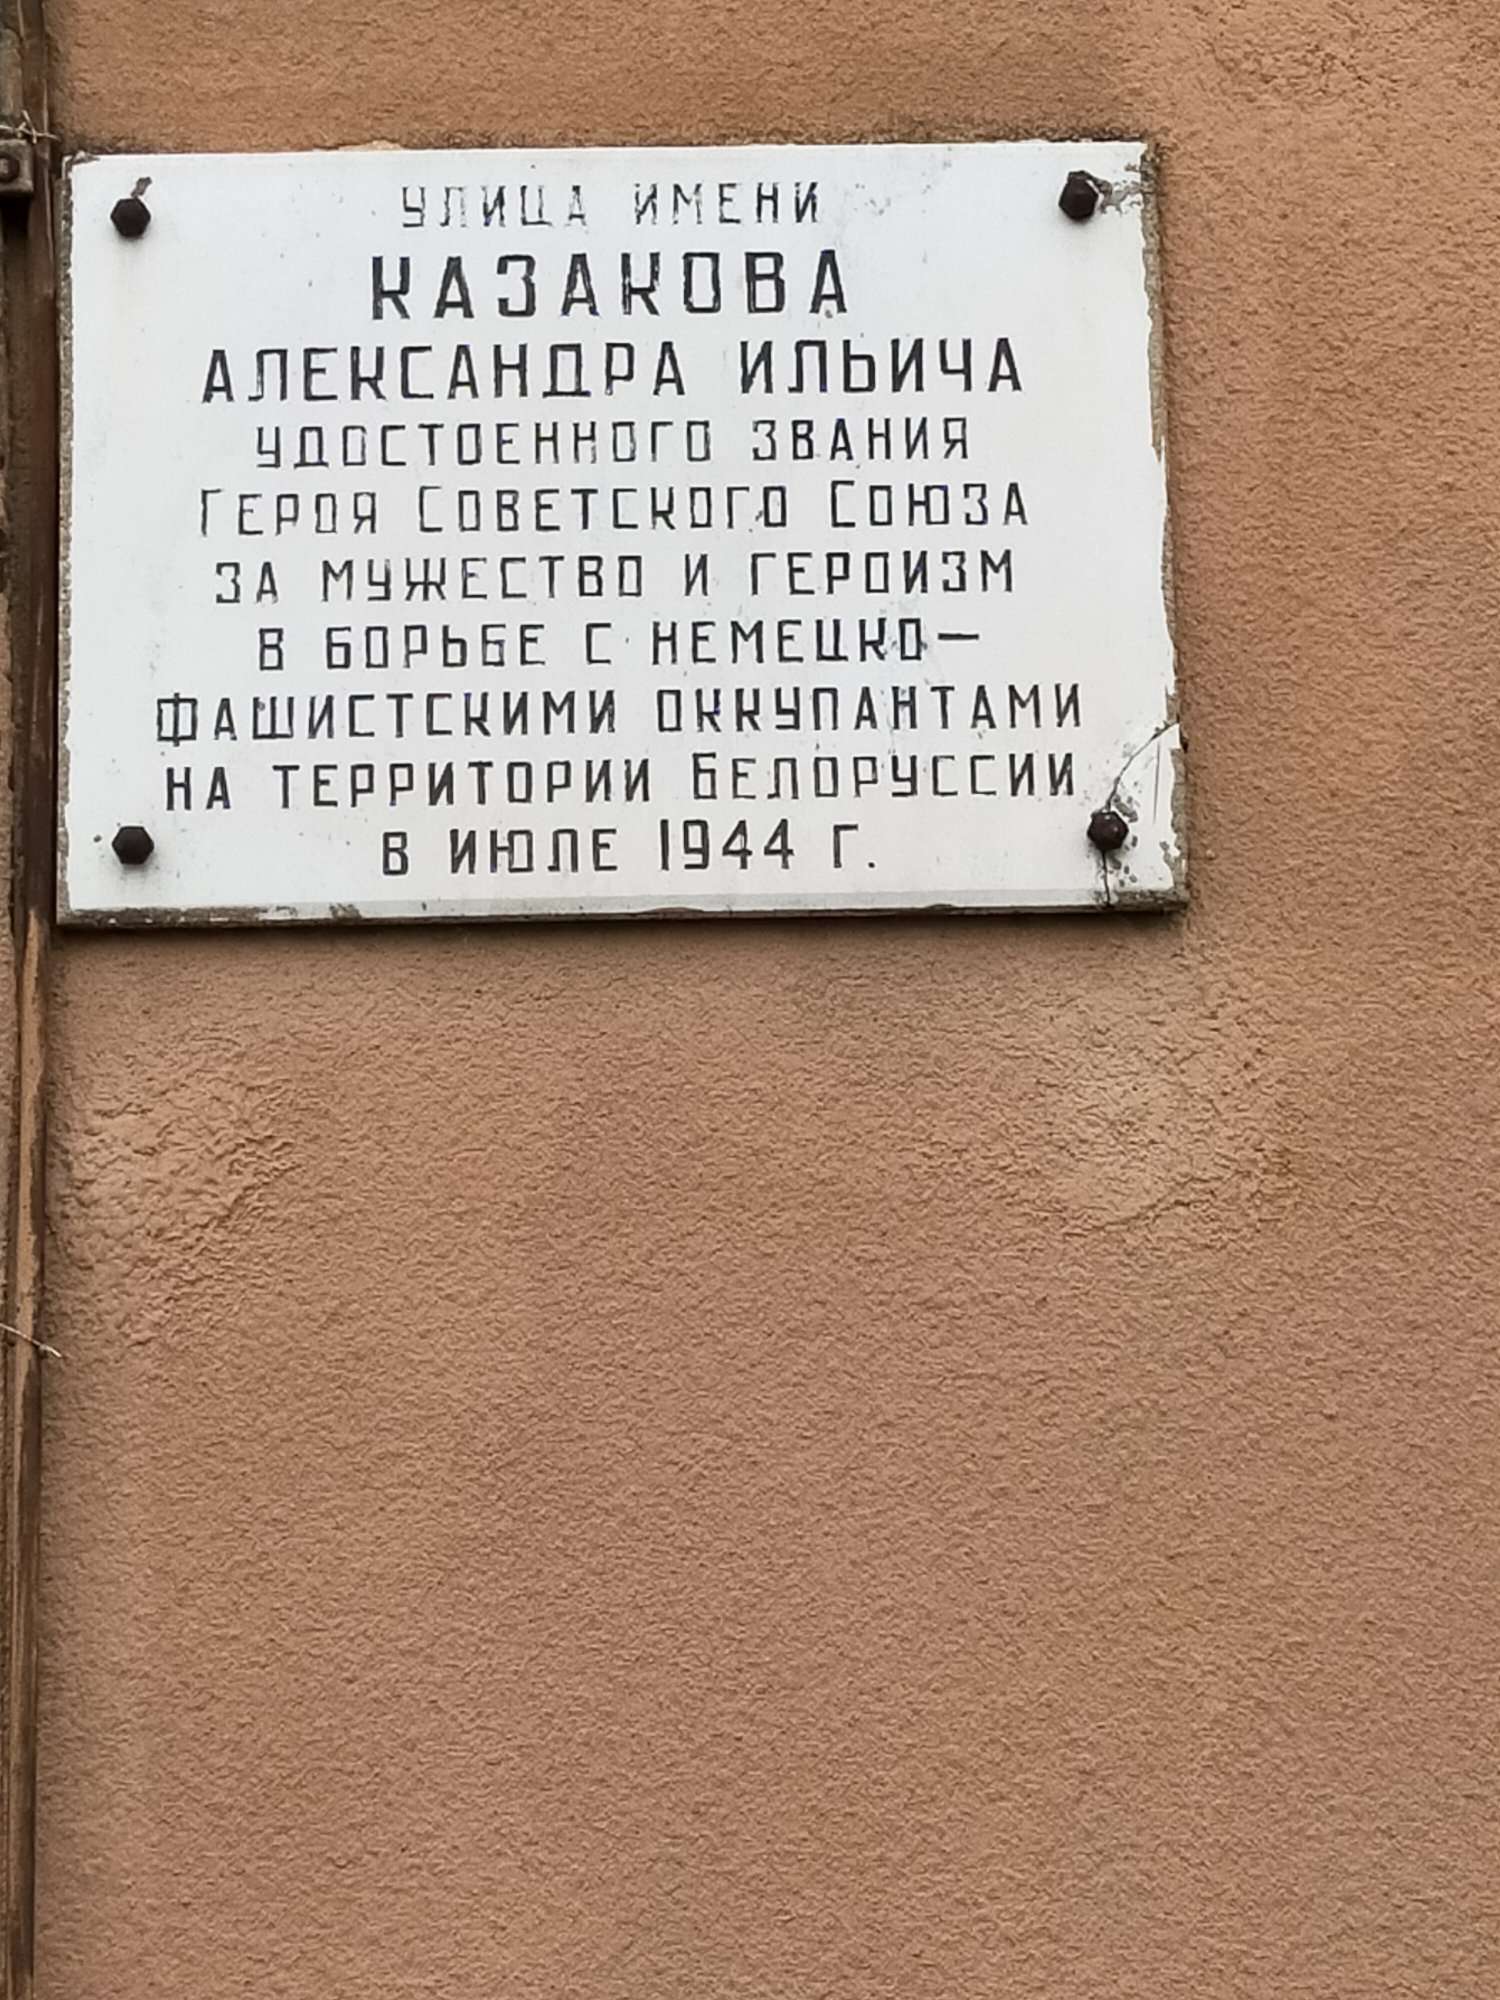 Мемориальная доска В честь Героя Советского Союза Казакова А.И., расположенная в г. Барановичи,  район, Брестская область